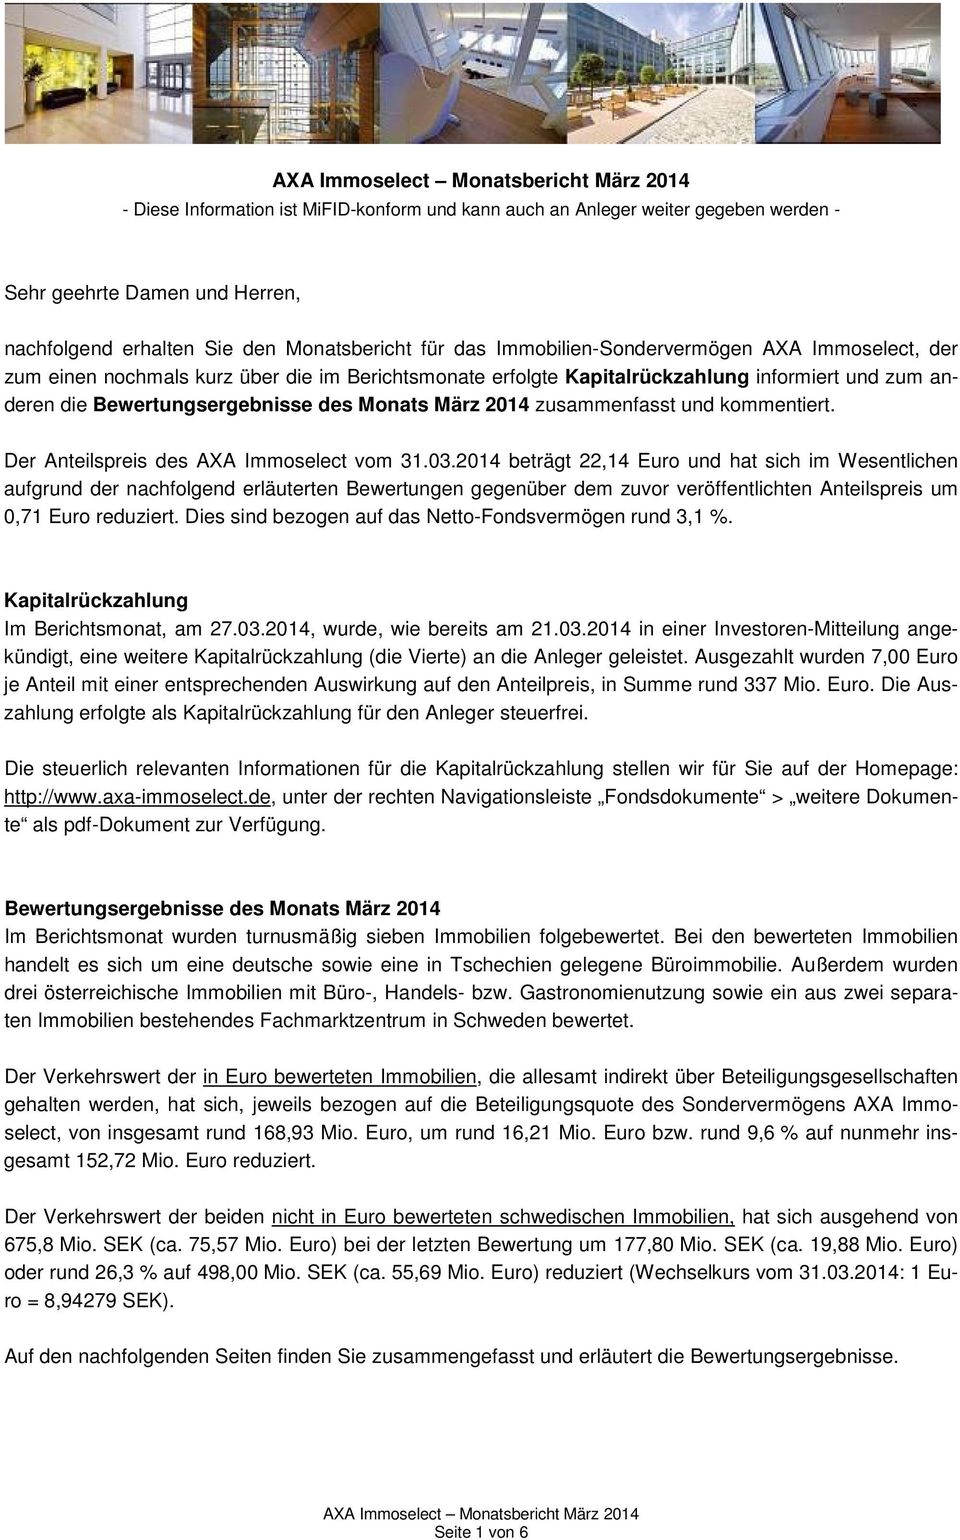 Der Anteilspreis des AXA Immoselect vom 31.03.